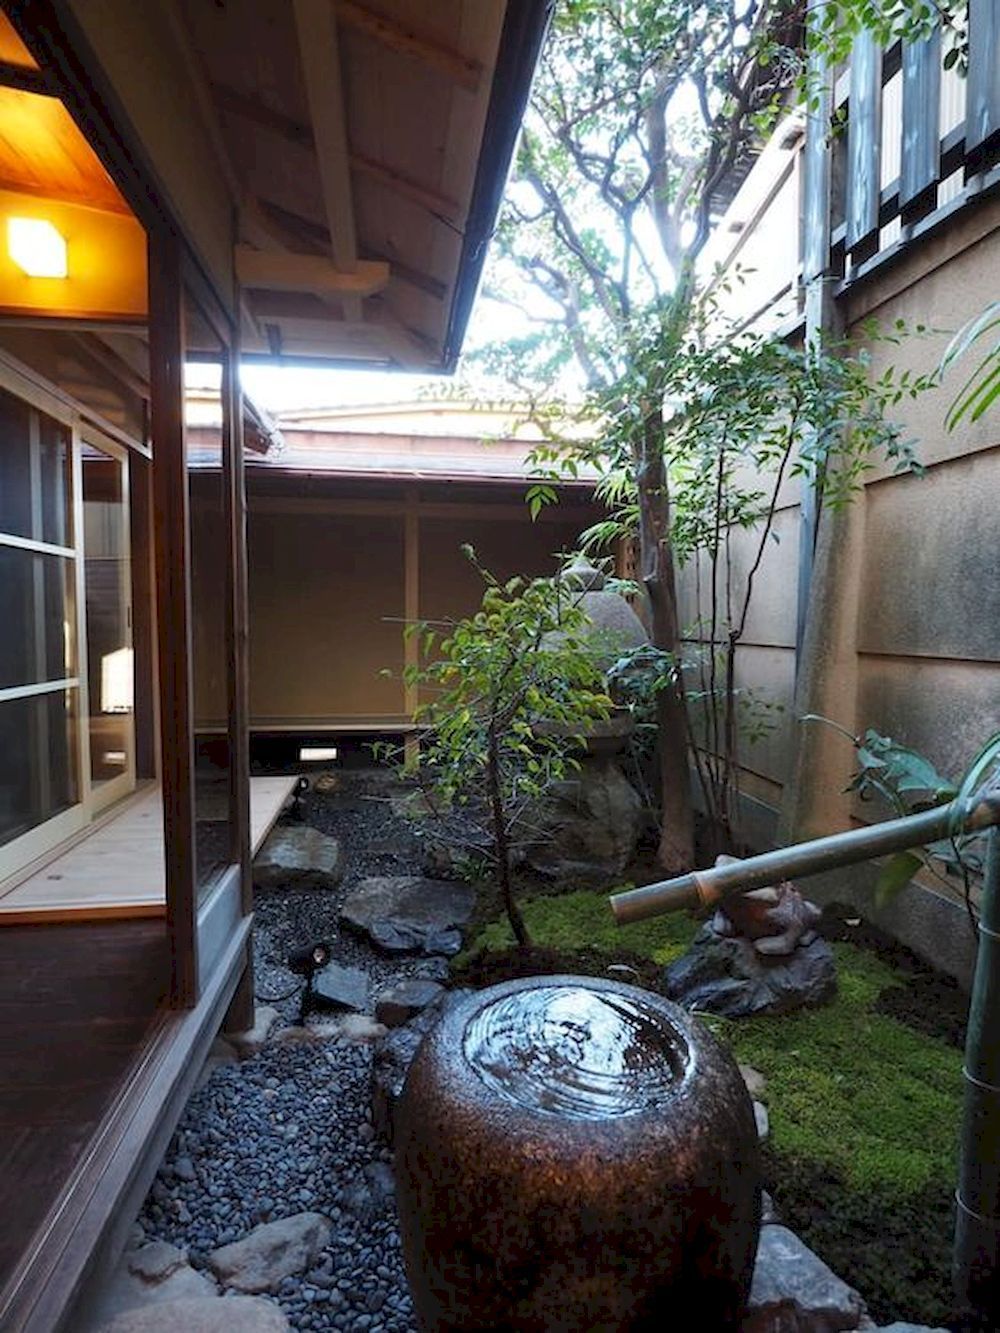 Ống nước bằng tre cũng thường xuyên xuất hiện trong các khu vườn phong cách Nhật Bản - phong cách vốn yêu chuộng những chất liệu từ thiên nhiên.